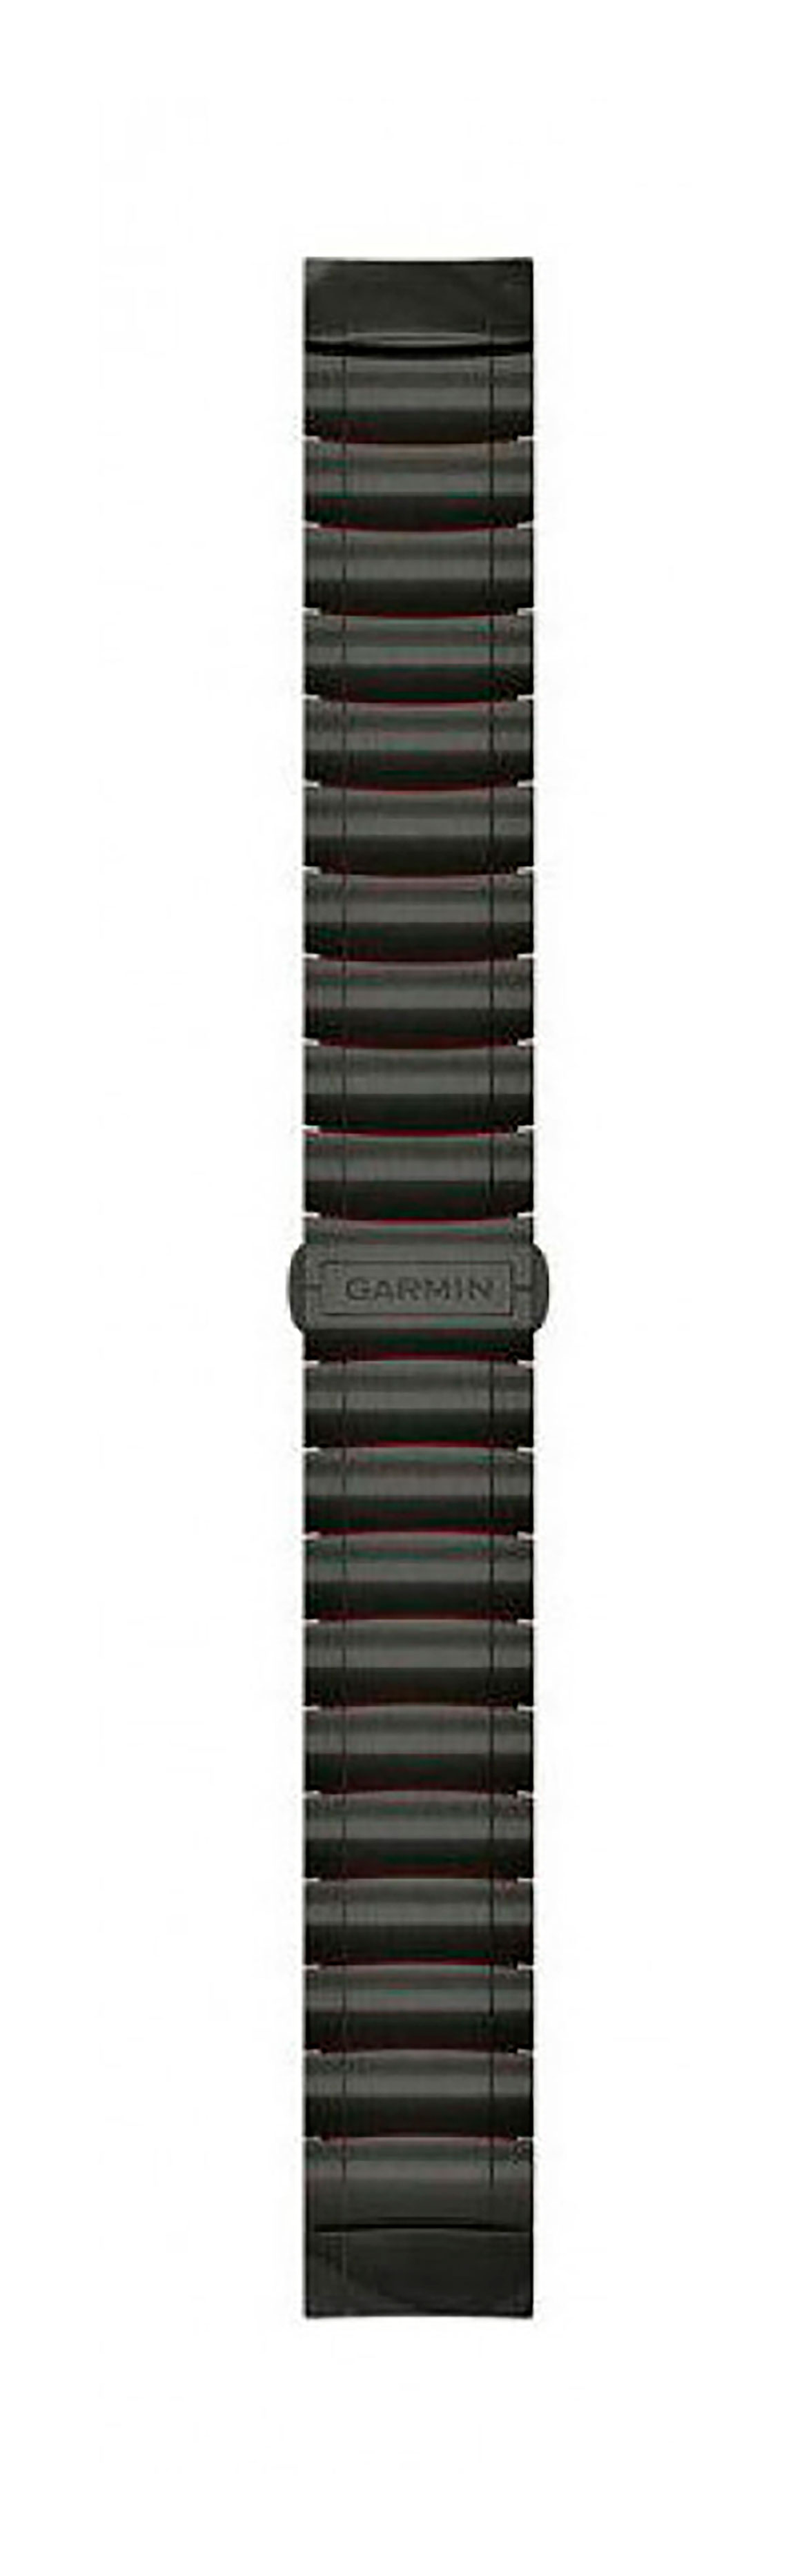 Garmin QuickFit 22mm hybridarmband i titan och silikon kolgrått 010-12738-00